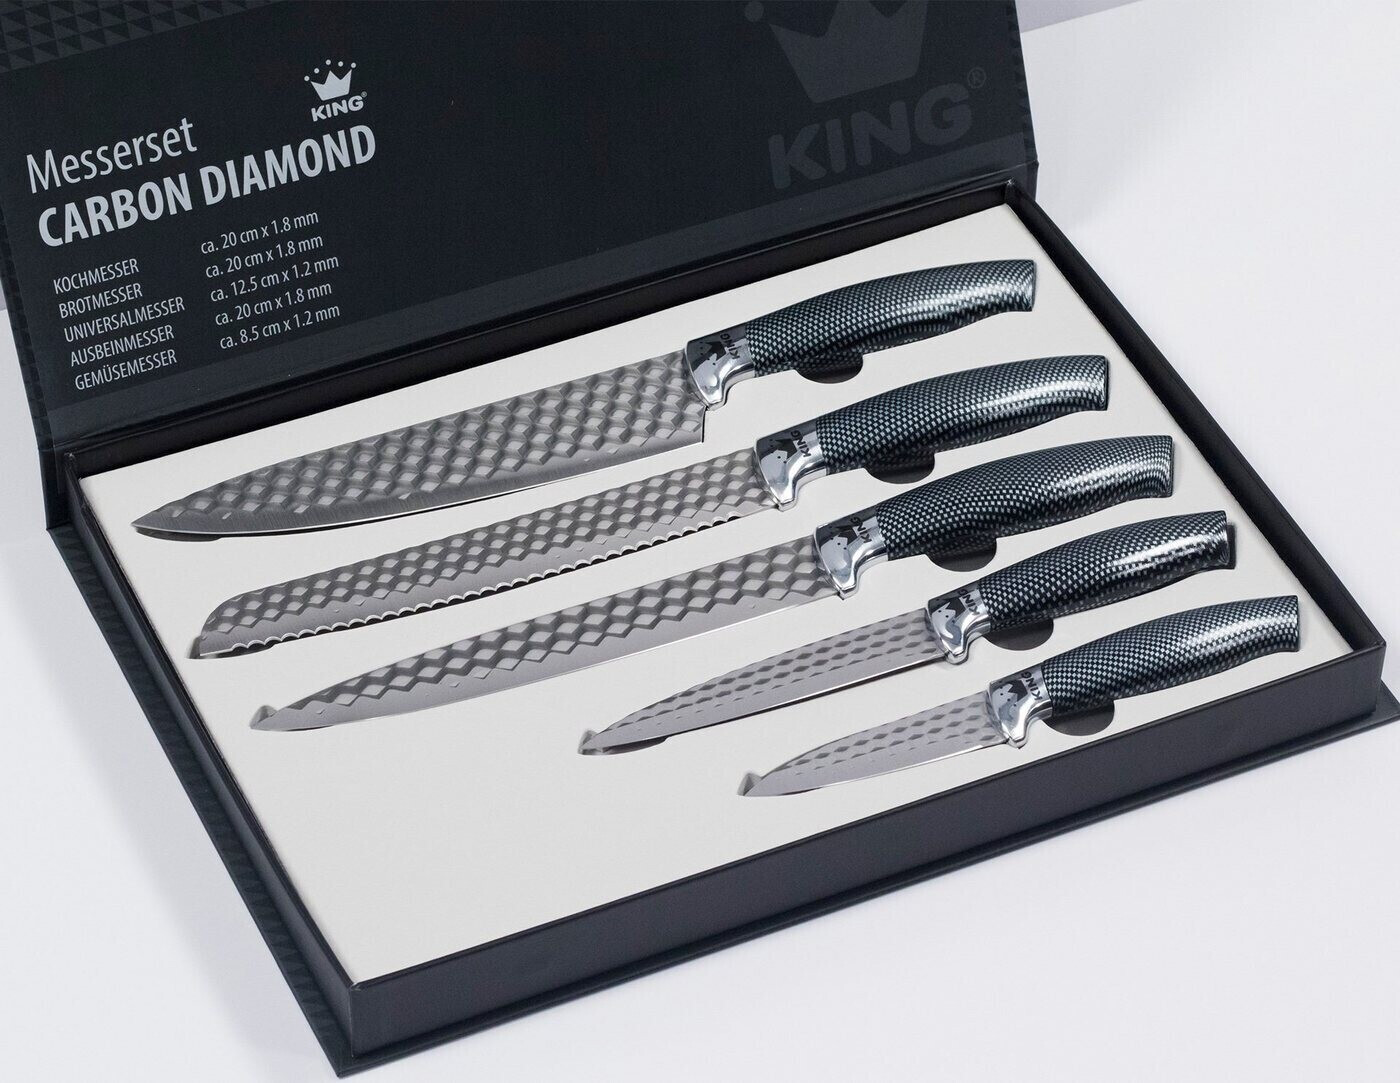 € ab Carbon 22,99 | Diamond 5-teilig Messer-Set bei King Preisvergleich